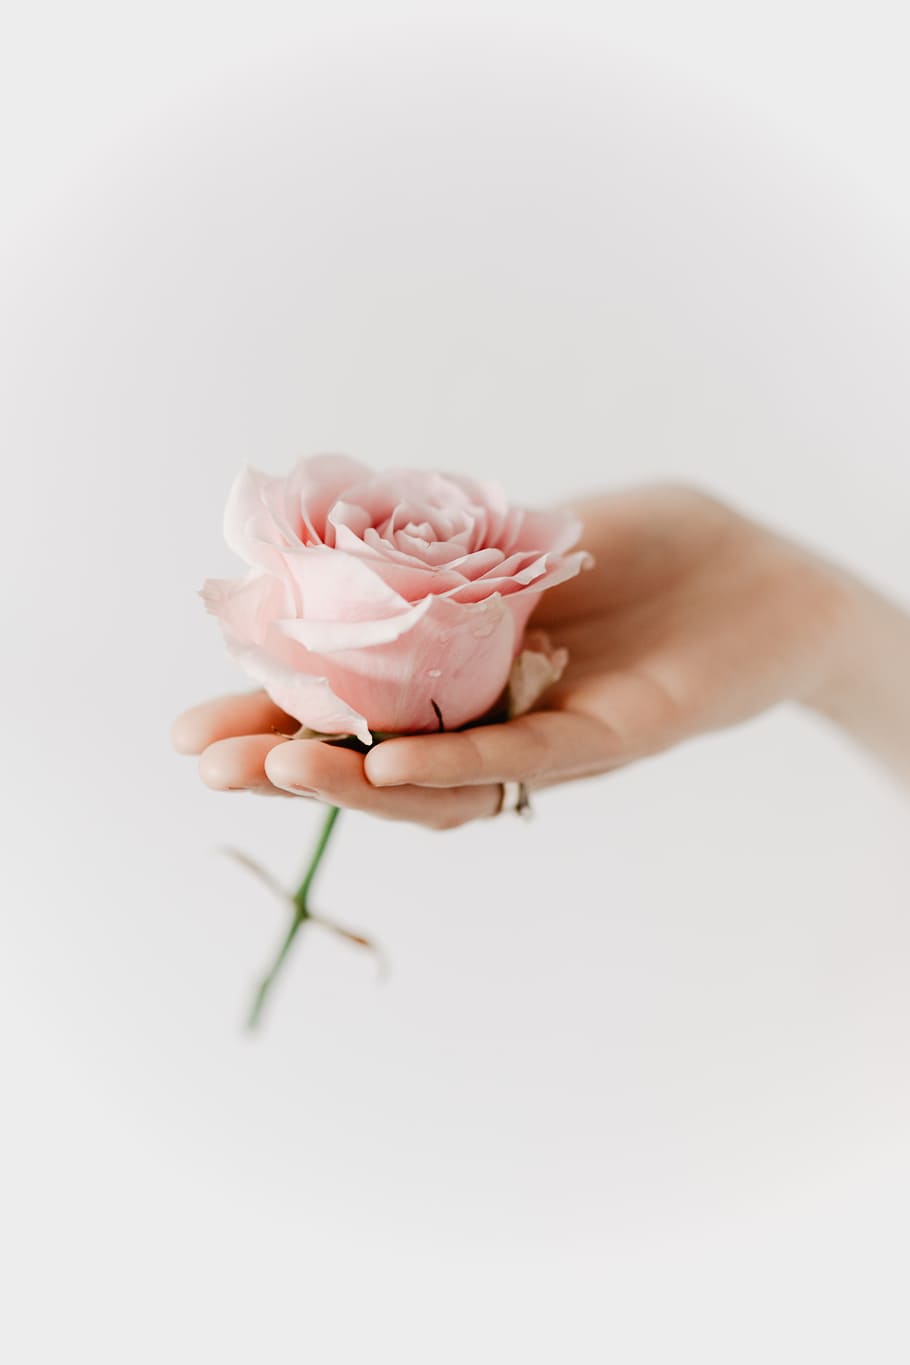 memegang, merah muda, mawar, bunga, tangan manusia, tangan, foto studio, bagian tubuh manusia, tanaman, keindahan di alam